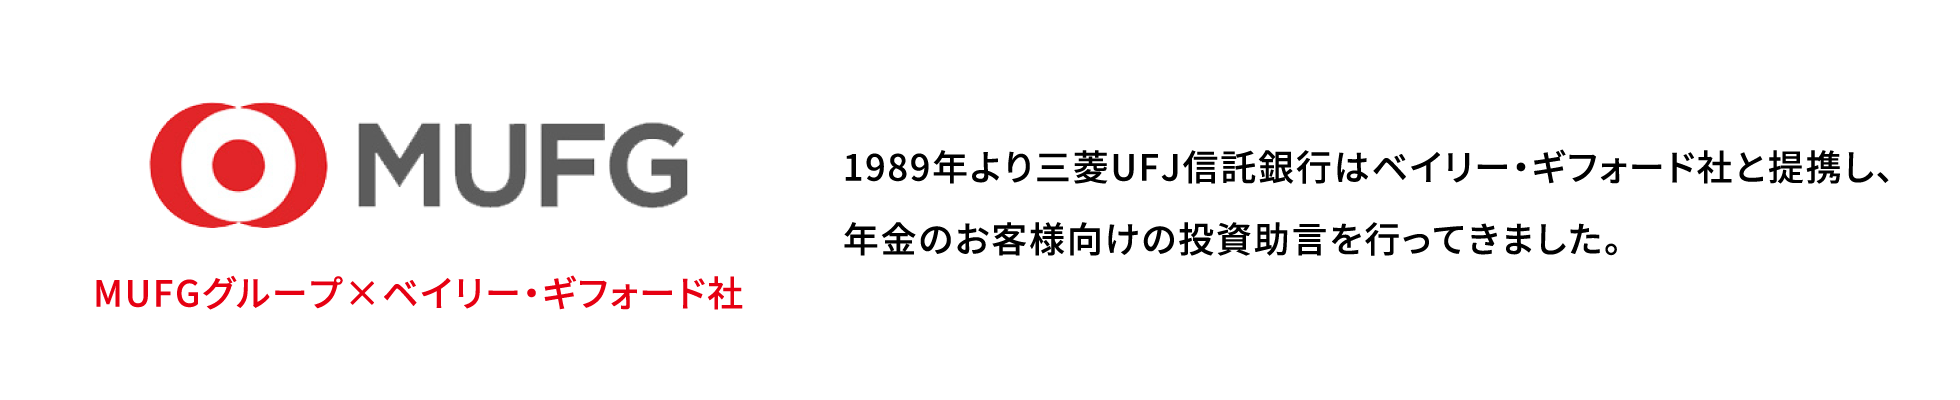 MUFGグループ×ベイリー・ギフォード社 1989年より三菱UFJ信託銀行はベイリー・ギフォード社と提携し、年金のお客様向けの投資助言を行ってきました。